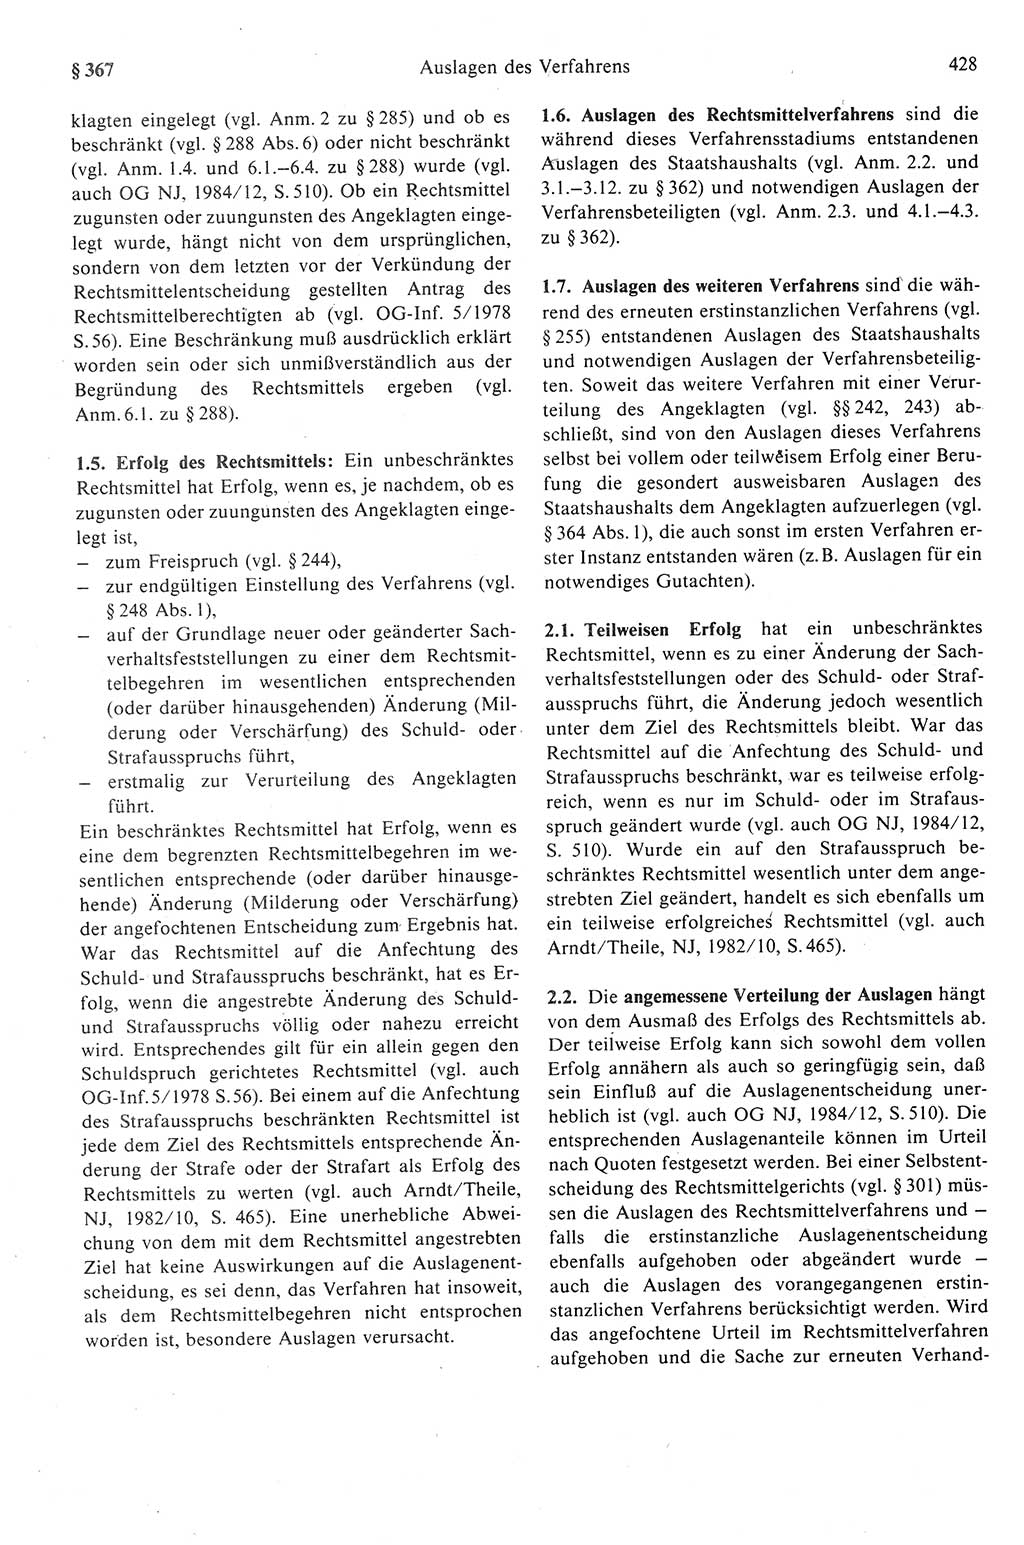 Strafprozeßrecht der DDR (Deutsche Demokratische Republik), Kommentar zur Strafprozeßordnung (StPO) 1989, Seite 428 (Strafprozeßr. DDR Komm. StPO 1989, S. 428)